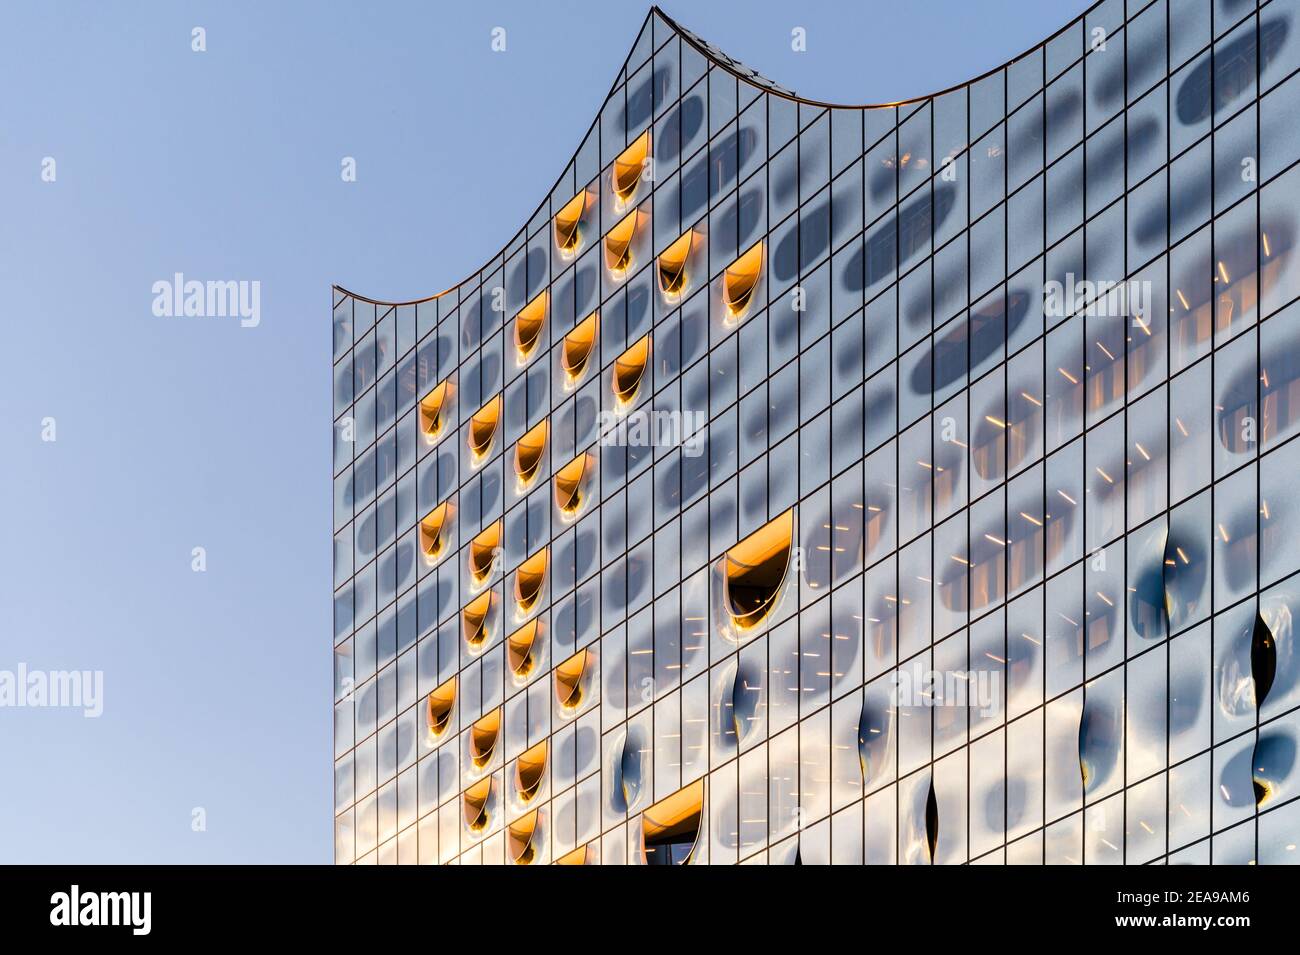 Elbphilharmonie in Hamburg Stock Photo